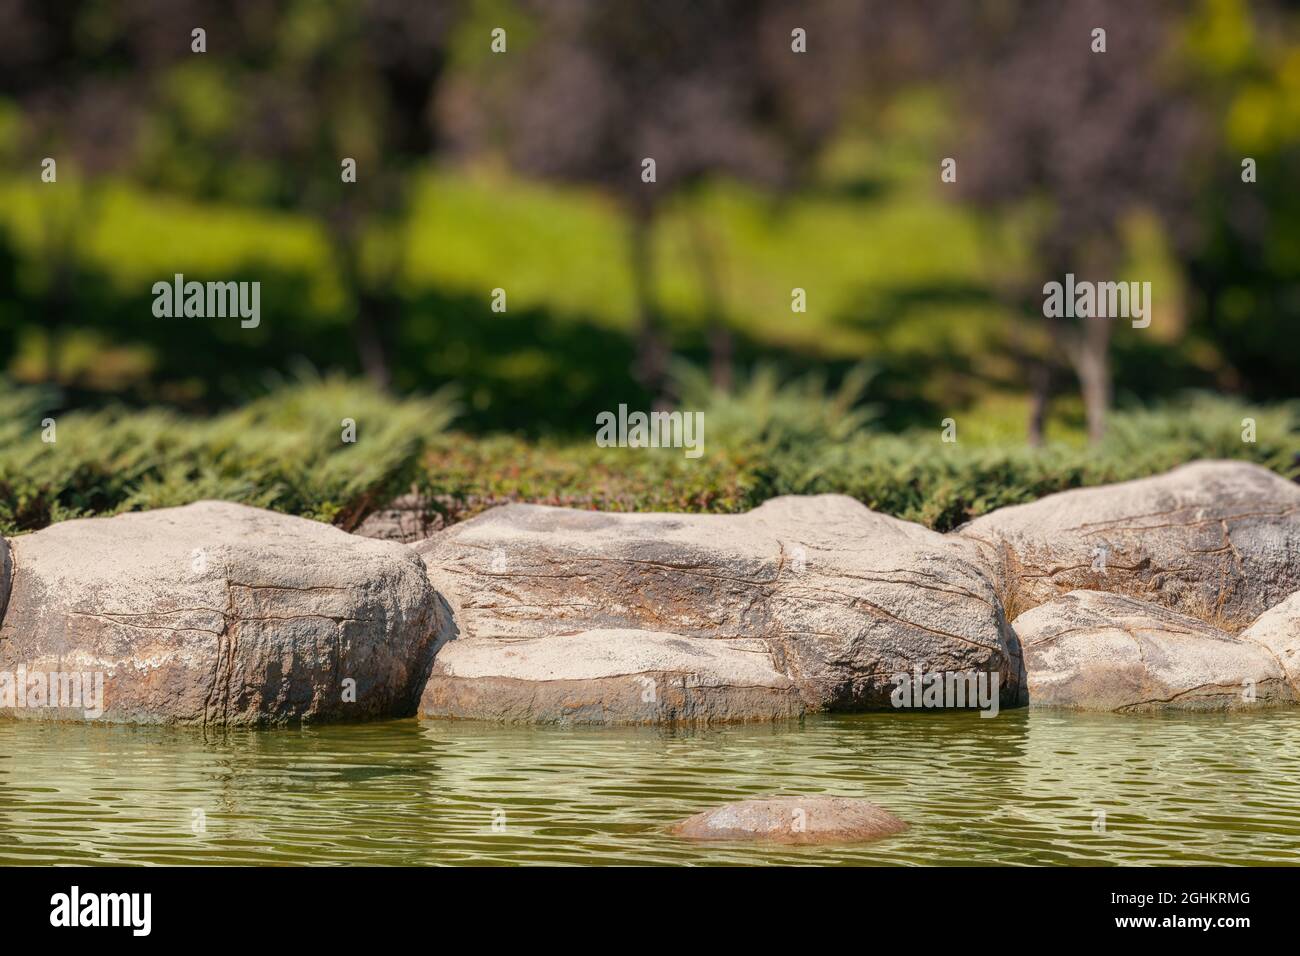 Details von Felsen am Zierbecken in einem Park. Unscharfe Bäume im Hintergrund. Stockfoto